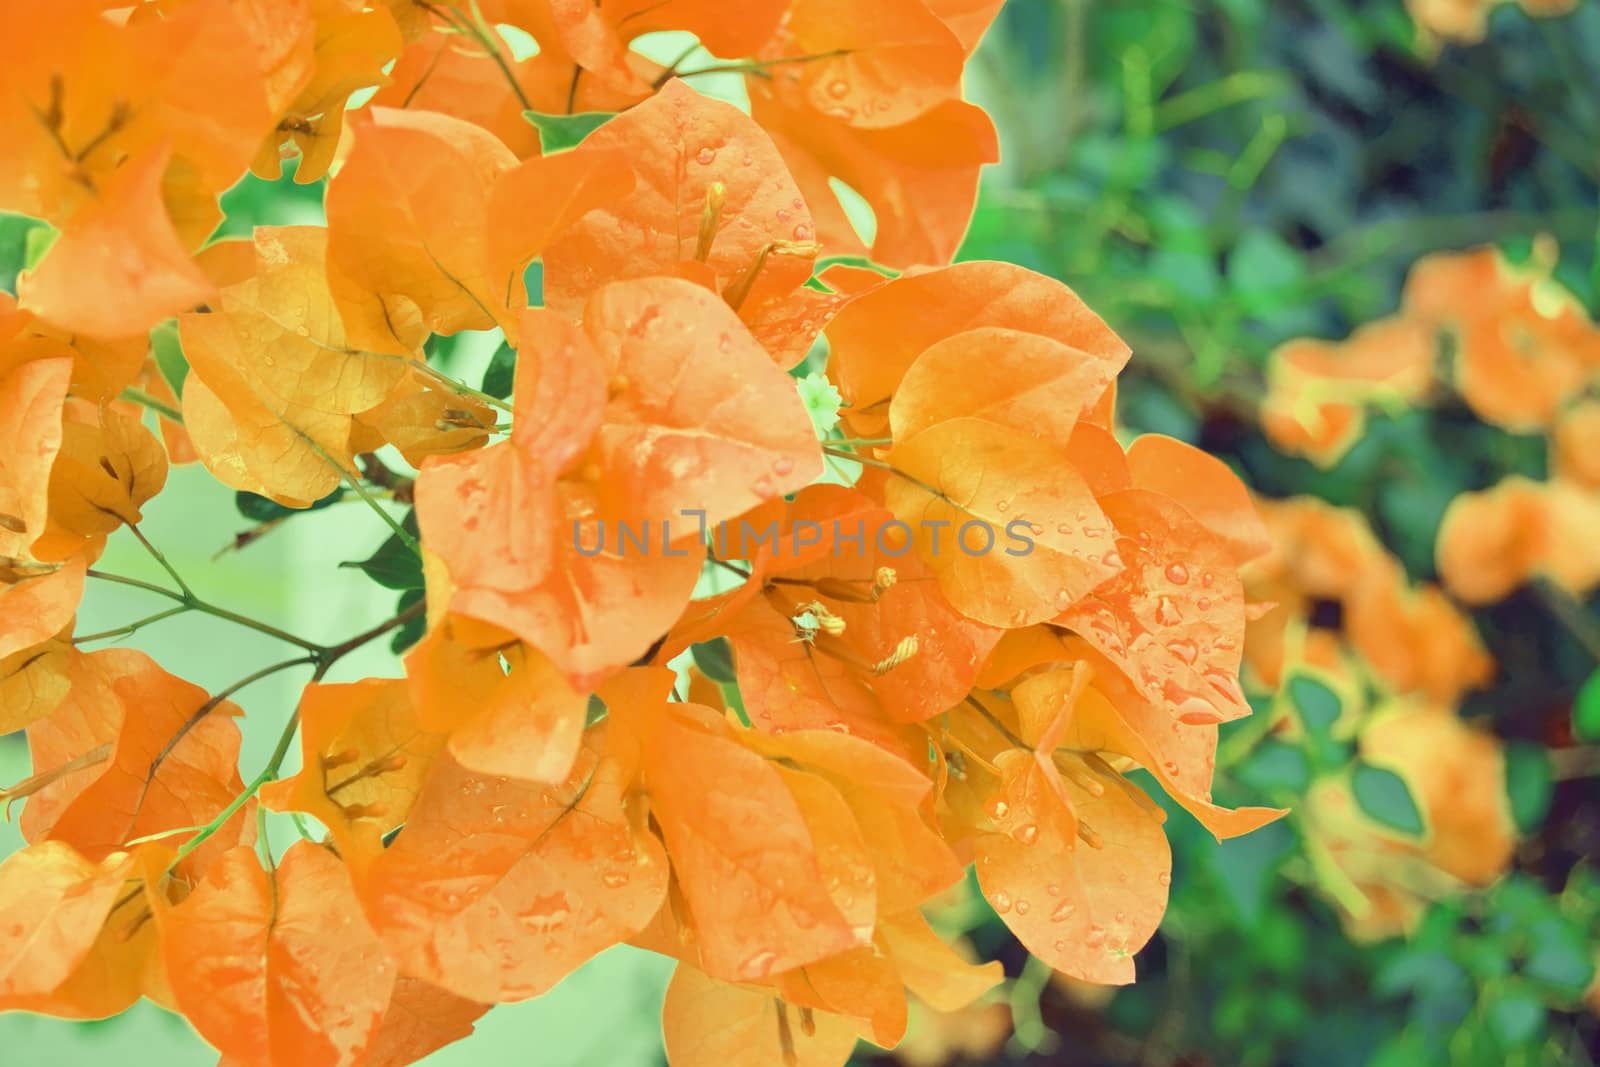 Orange flowers blooming in rainy season.